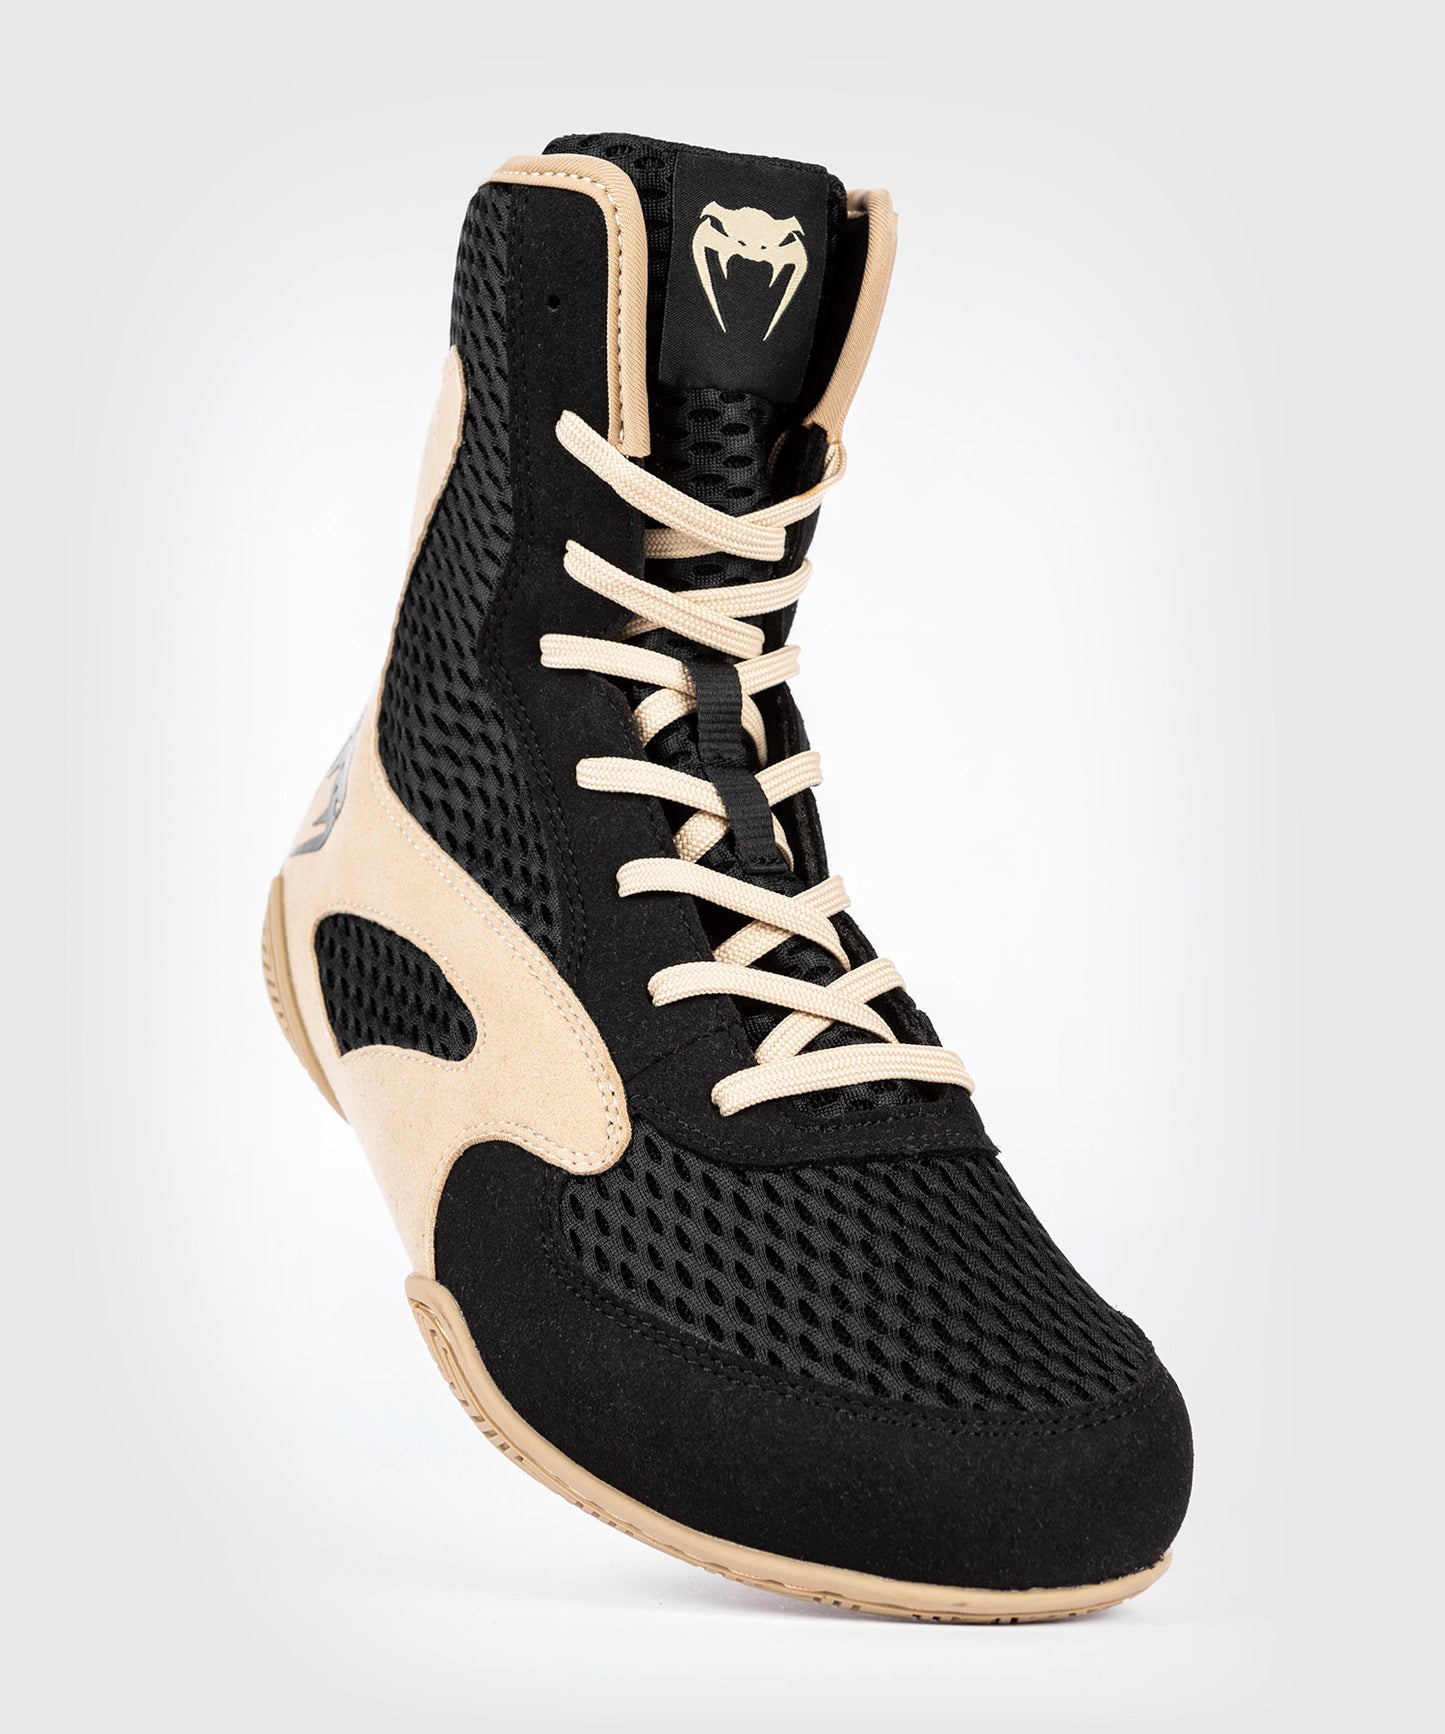 Venum Contender Boxing Shoes - Black/Sand